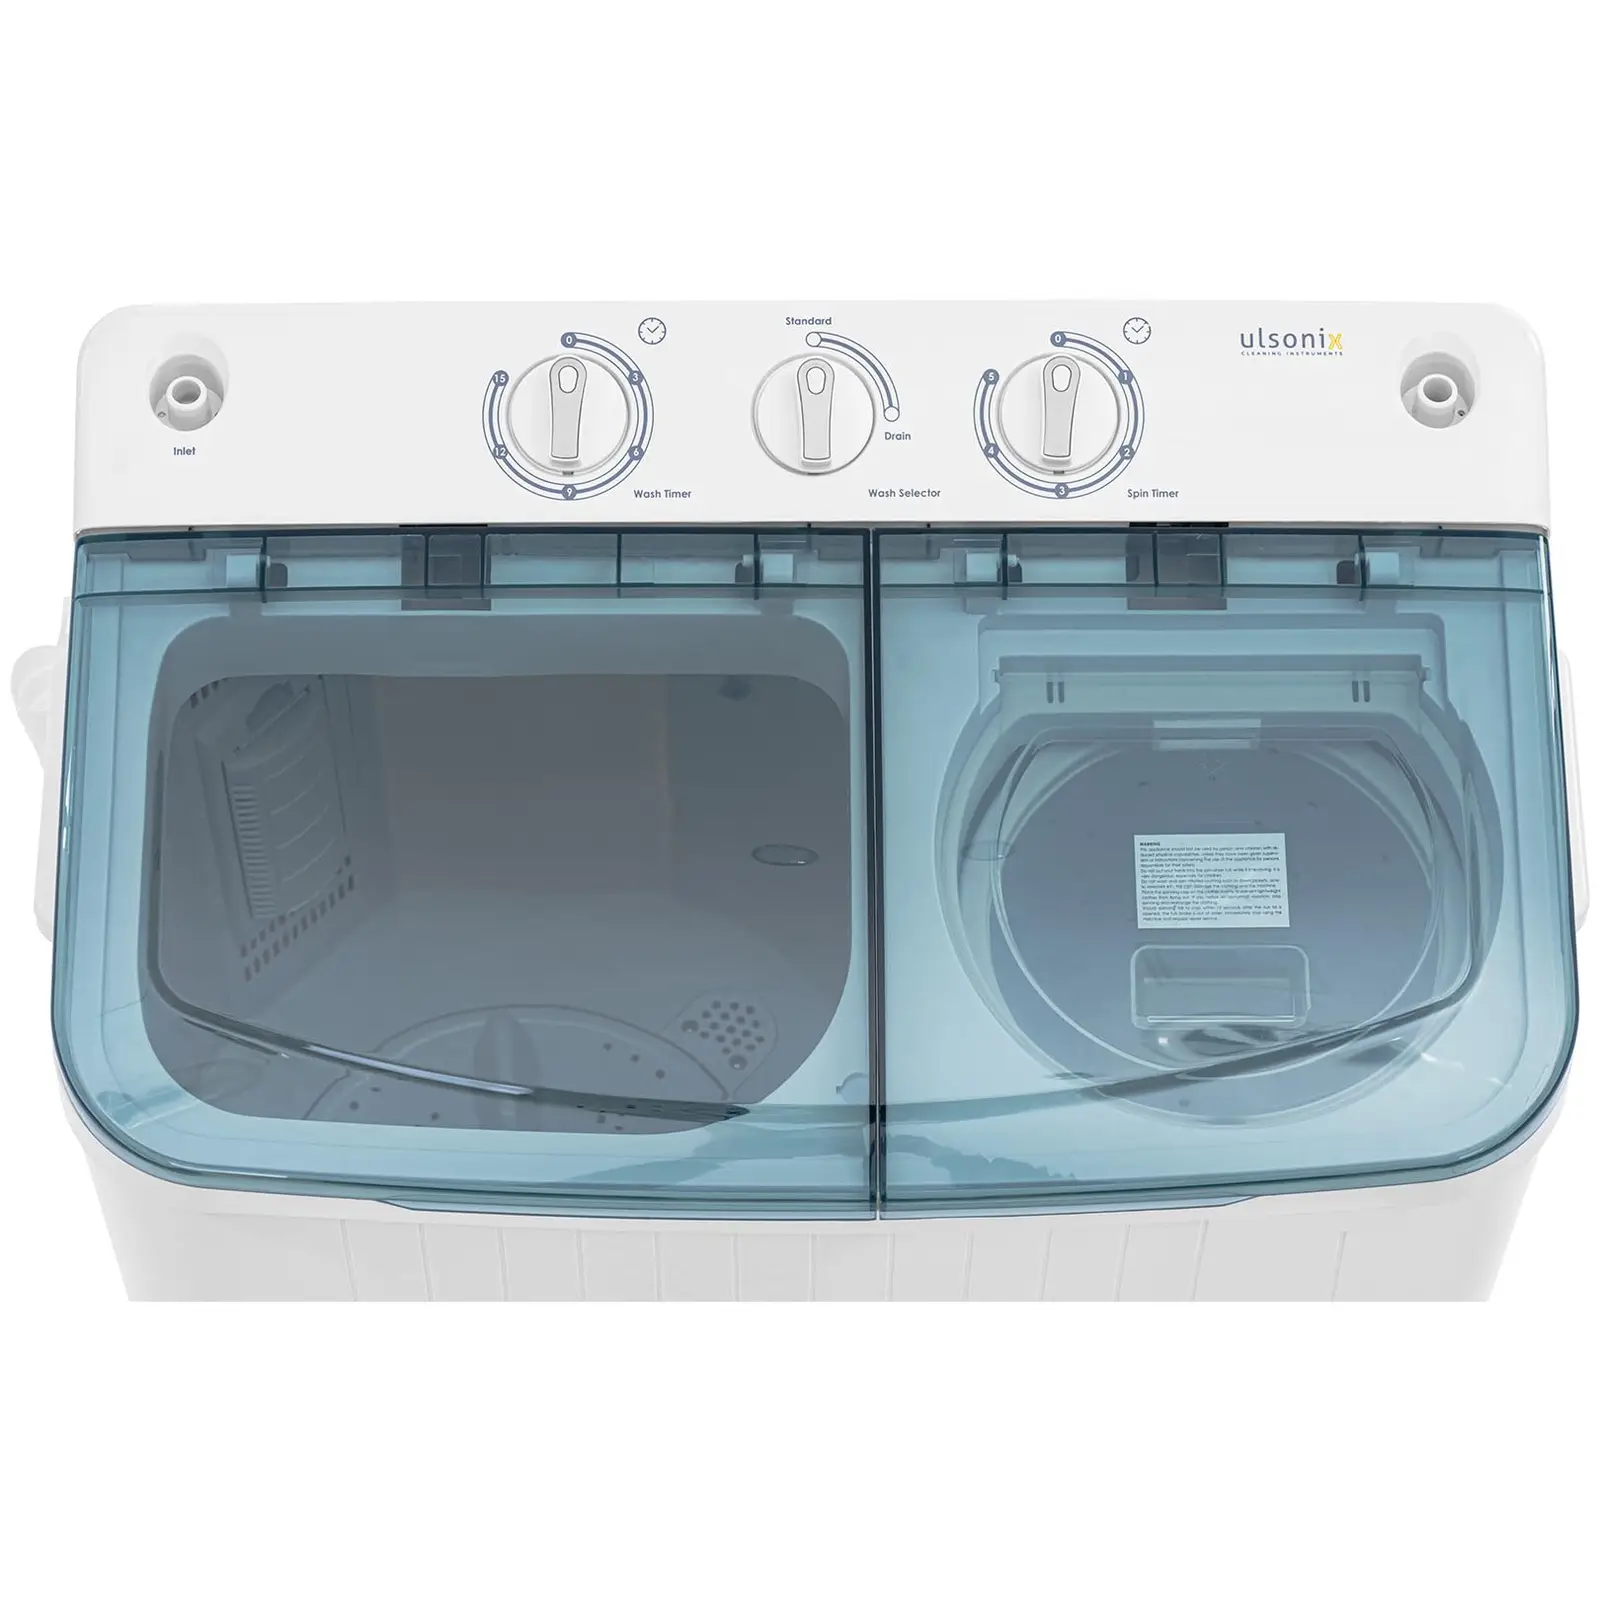 Mini lavatrice - Semiautomatica - Con centrifuga separata - 5 kg